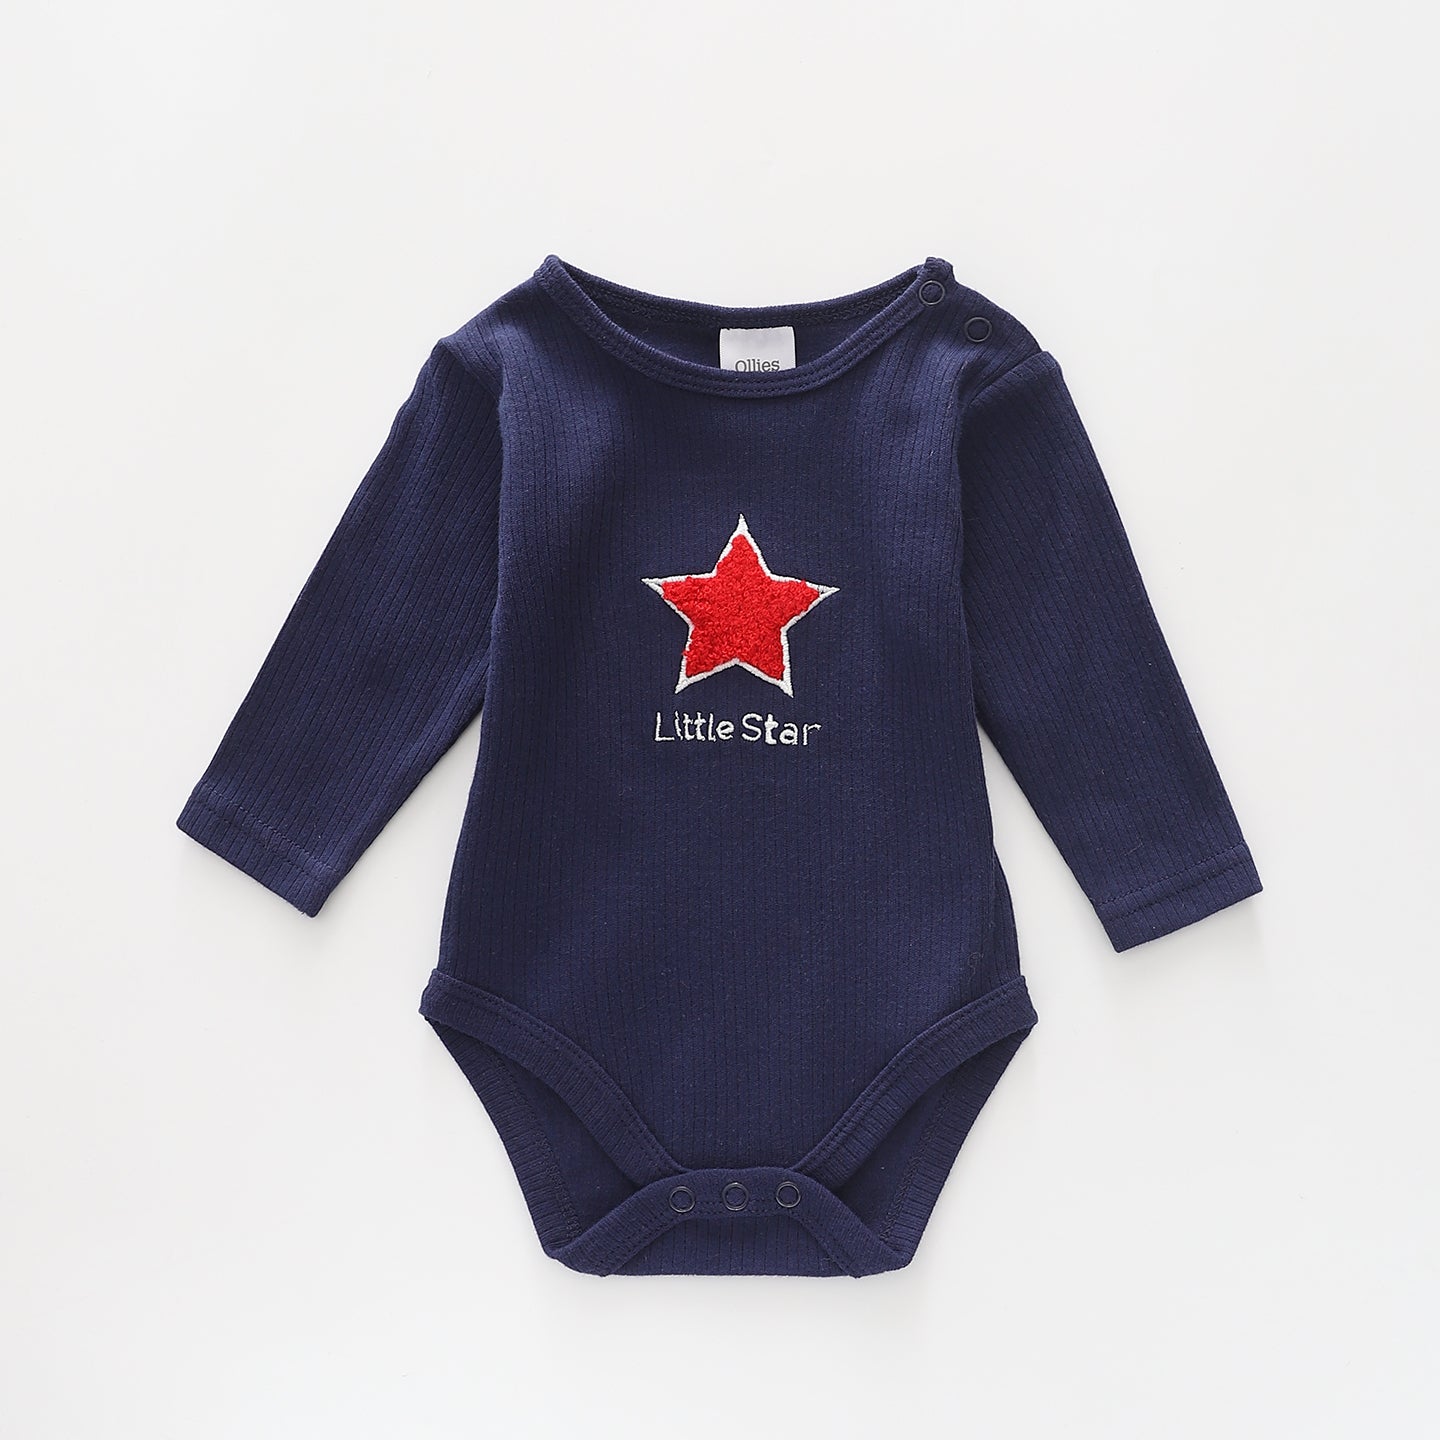 Little Star, Baby Boys Bodysuit